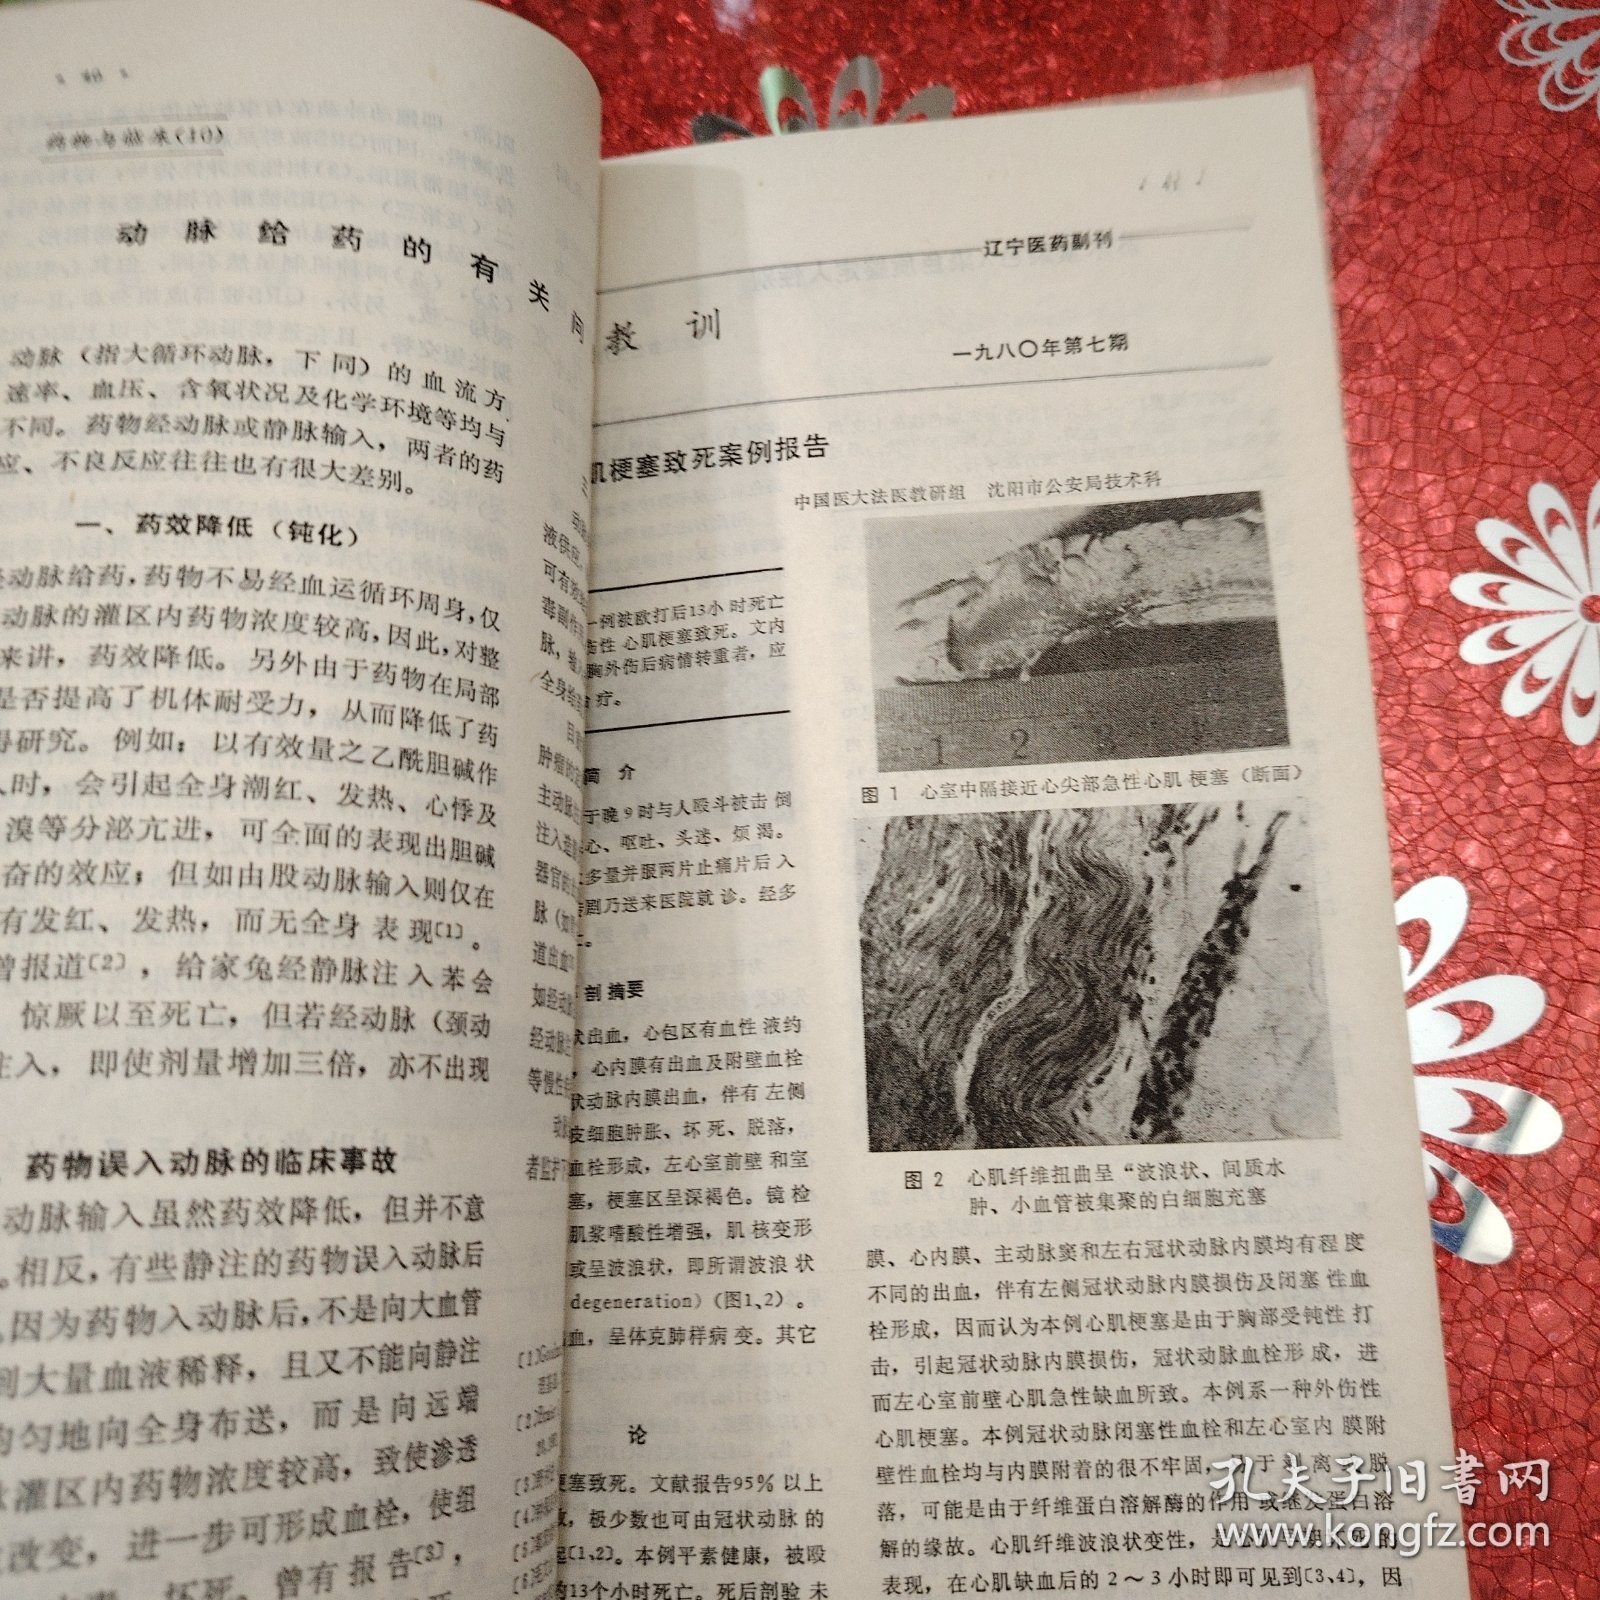 辽宁医药 1980年7月20日出版 第九卷 第7期